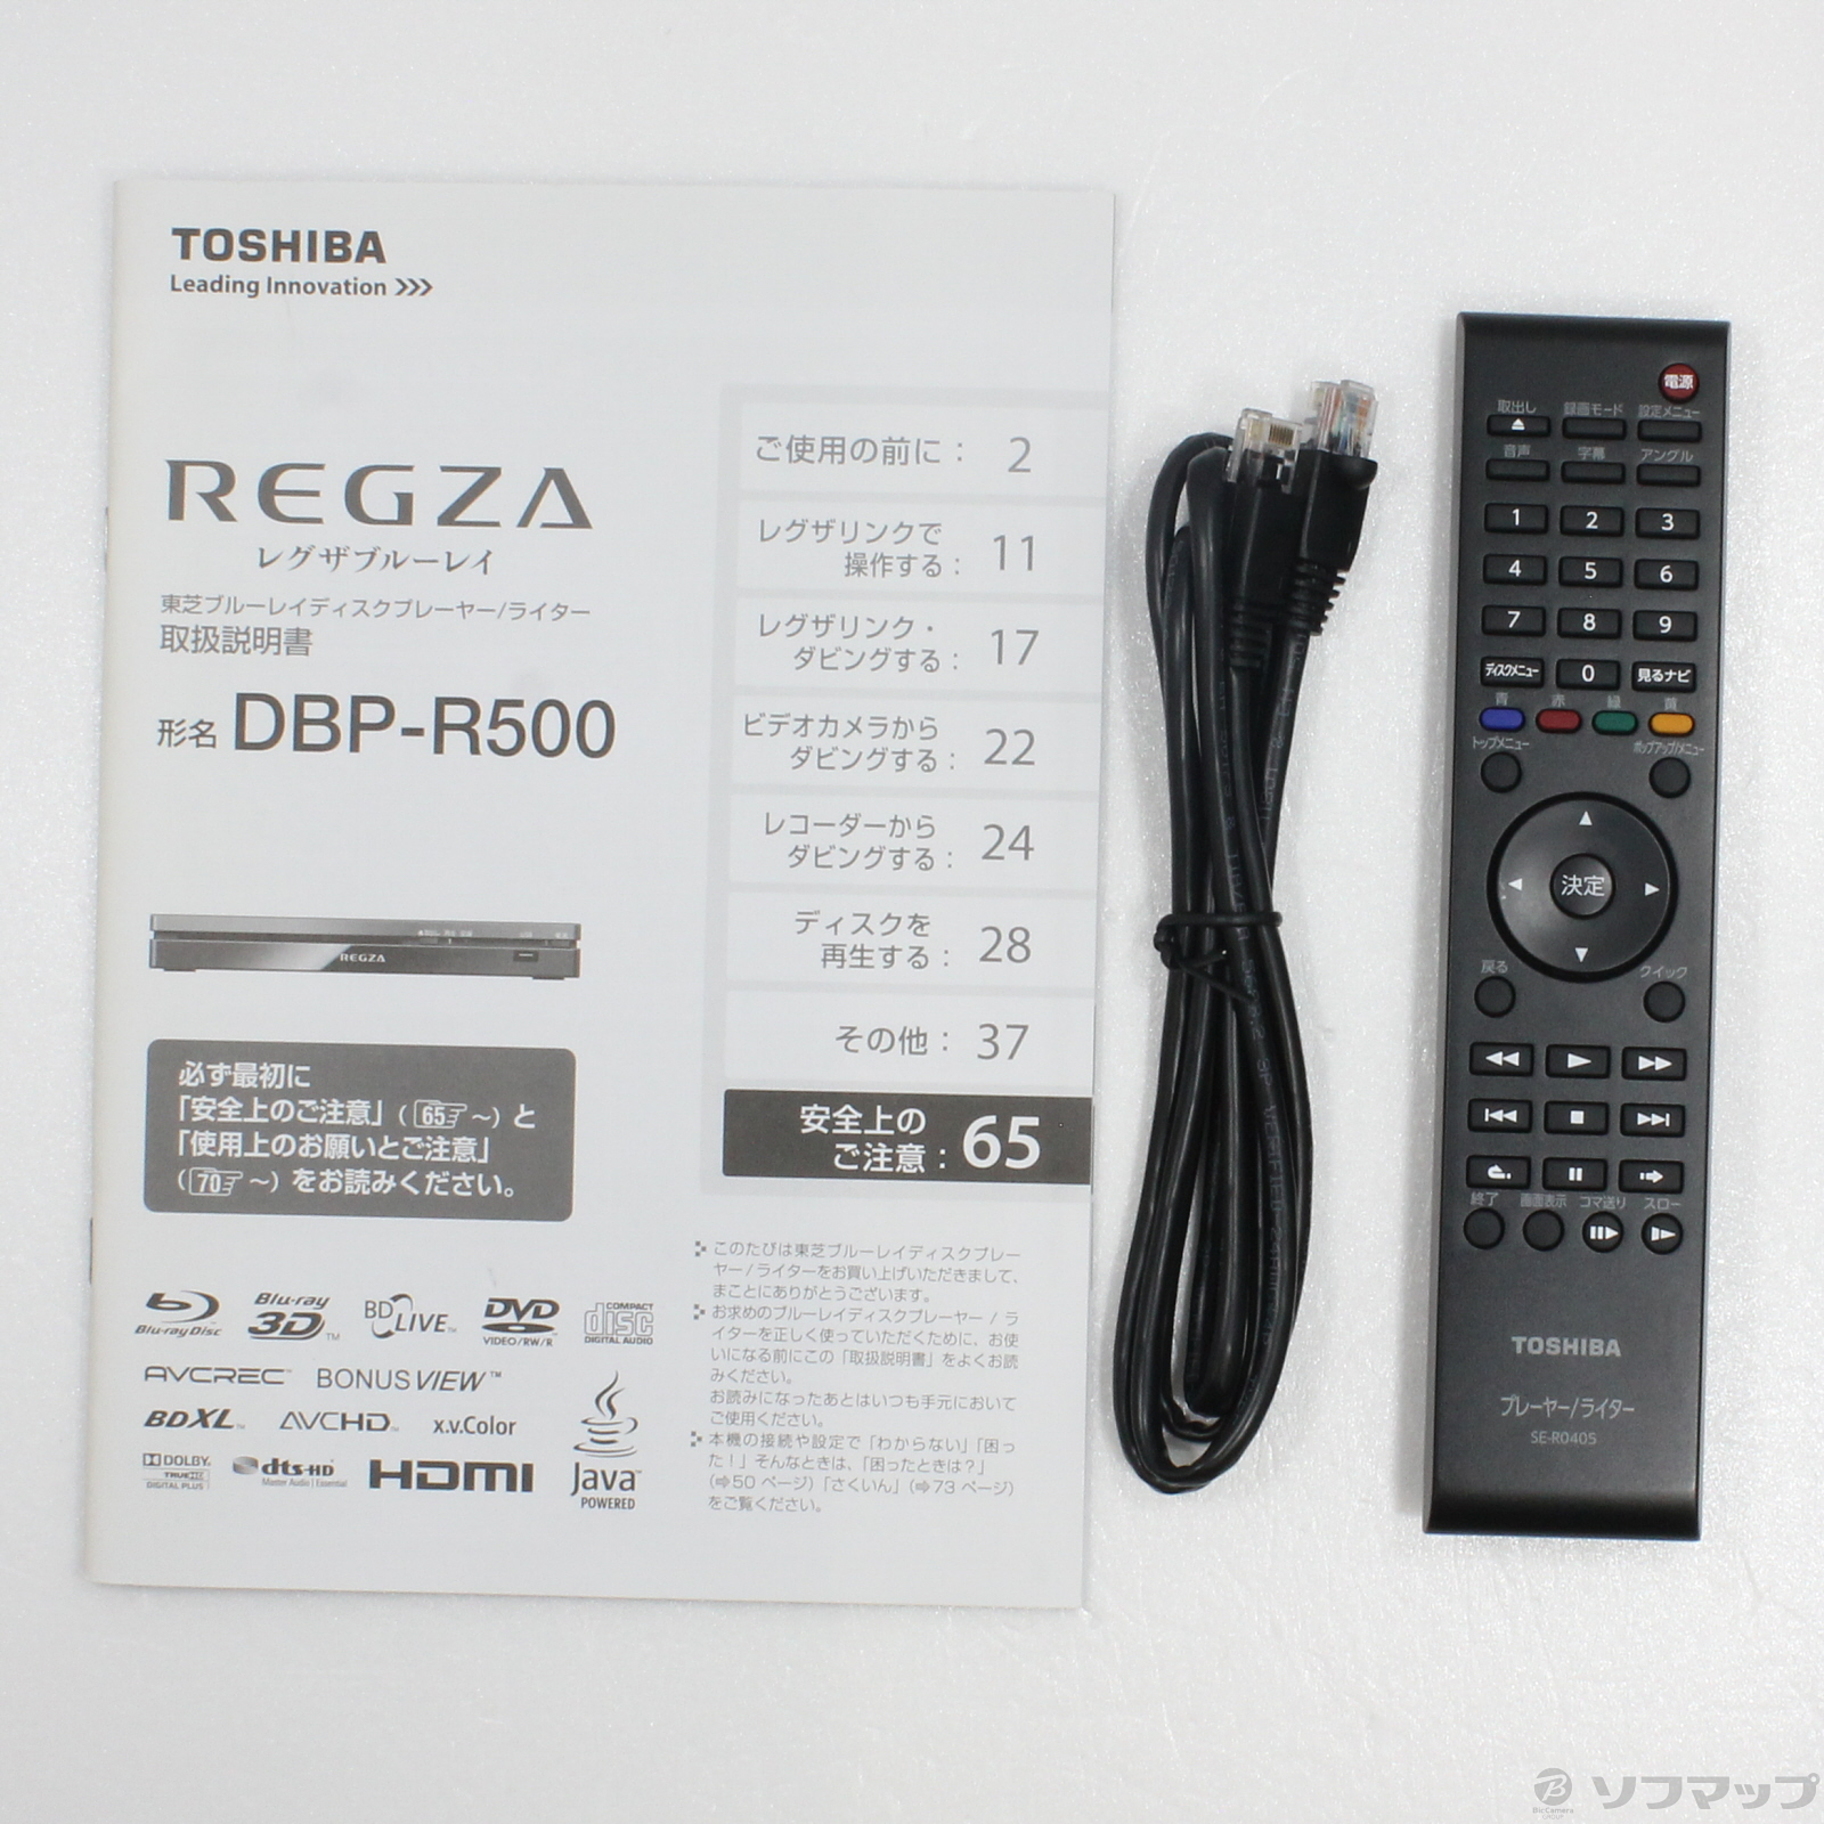 TOSHIBA REGZA レグザブルーレイ DBP-R500 - テレビ/映像機器